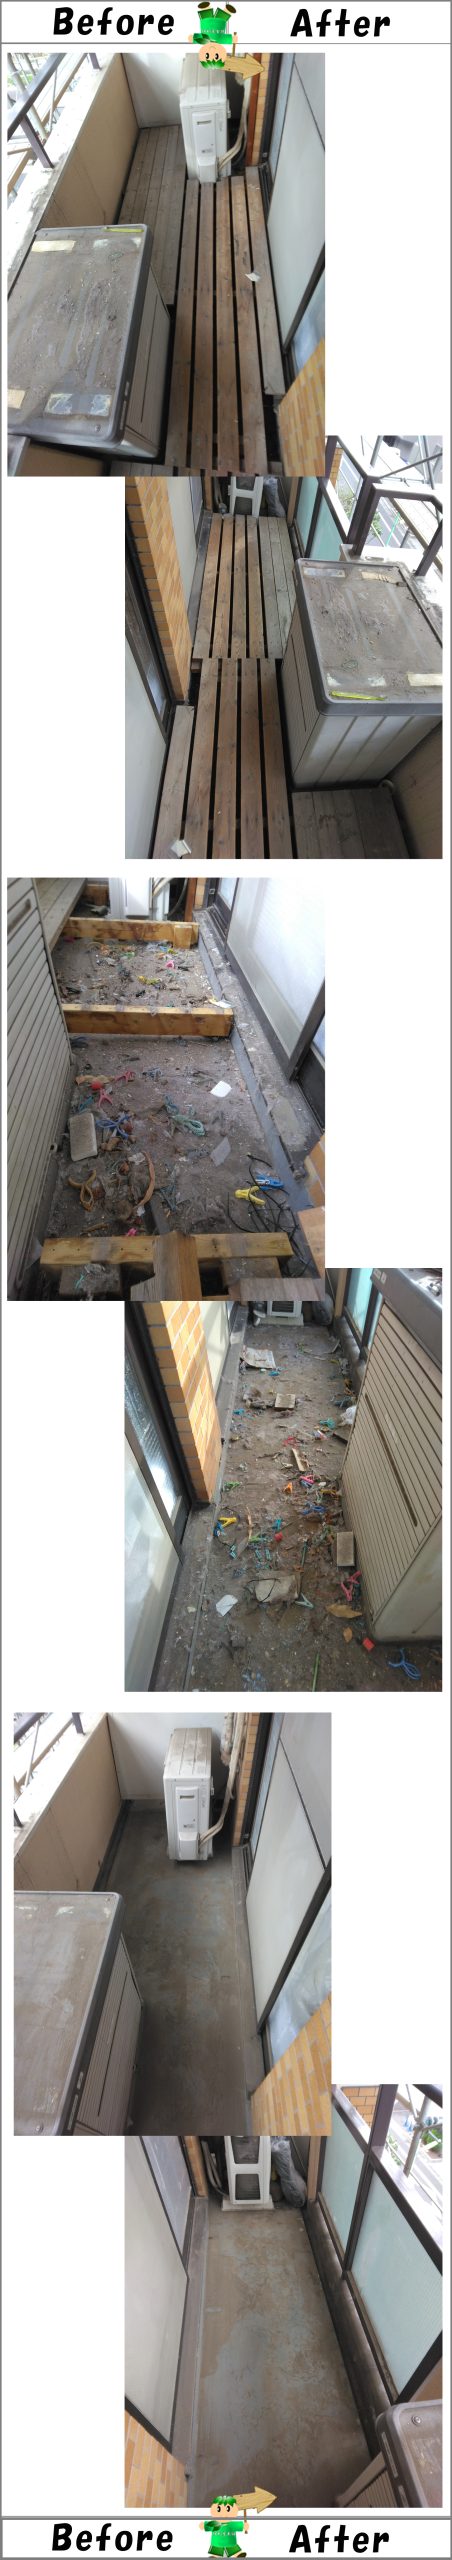 マンションベランダに設置していたウッドデッキの解体処分及び清掃